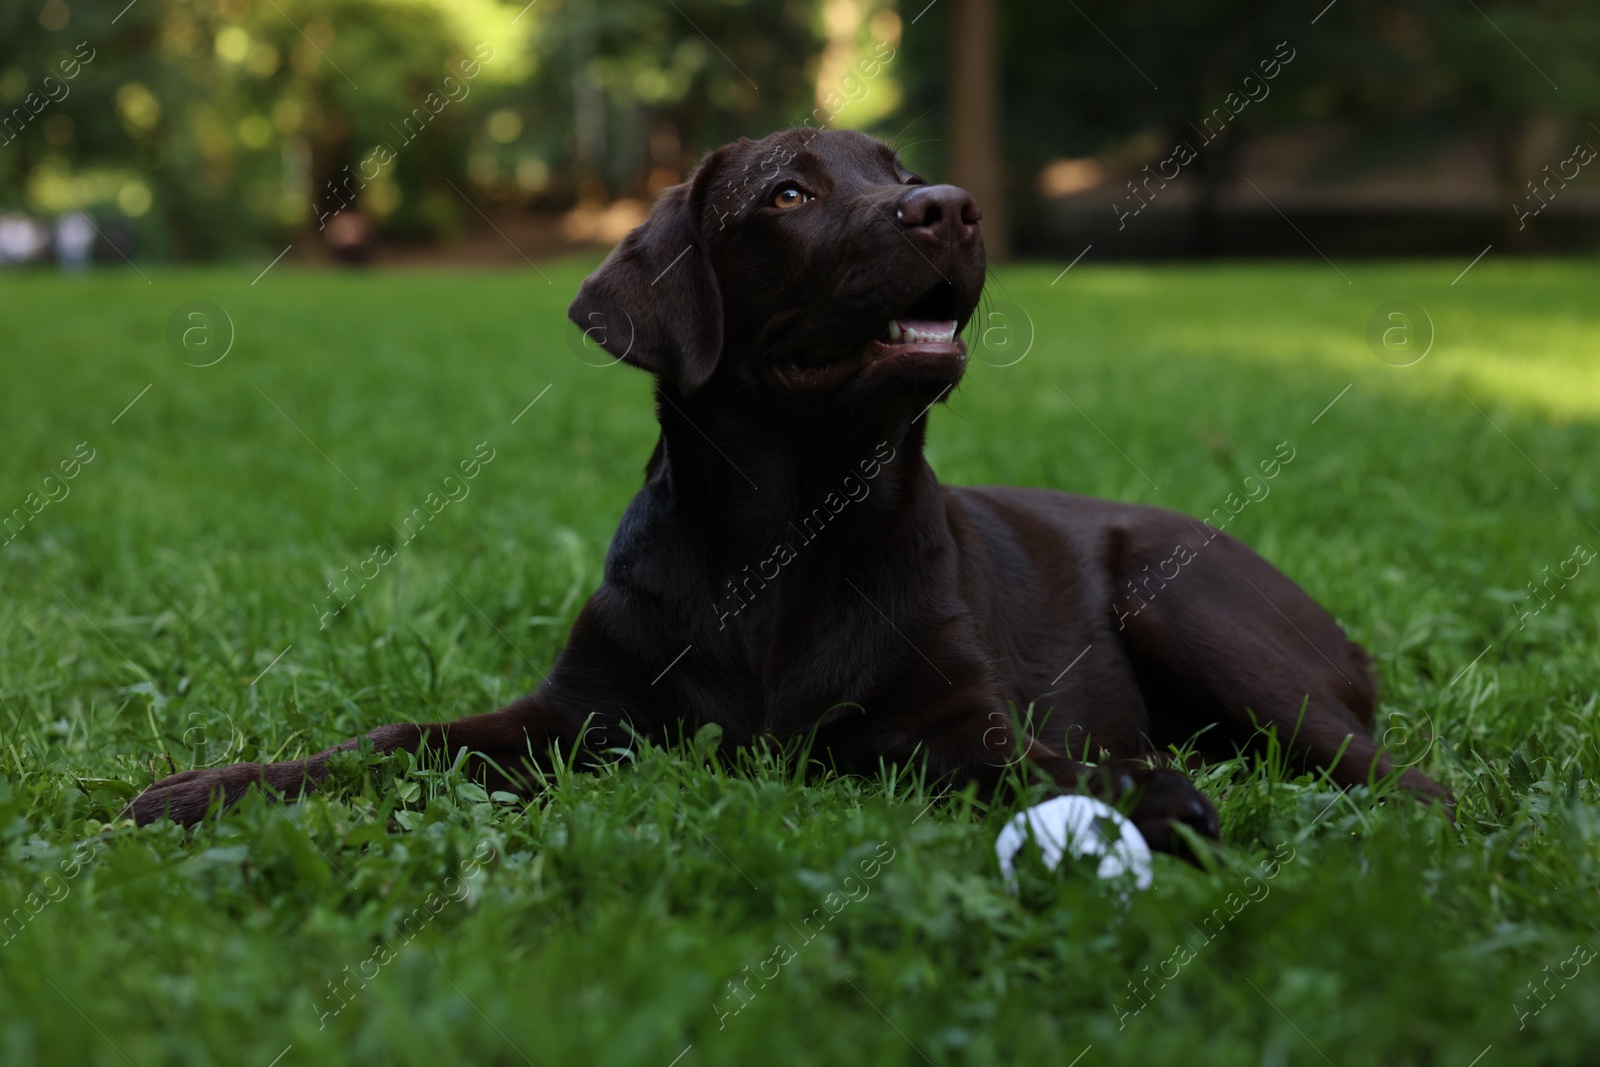 Photo of Adorable Labrador Retriever dog with ball on green grass in park